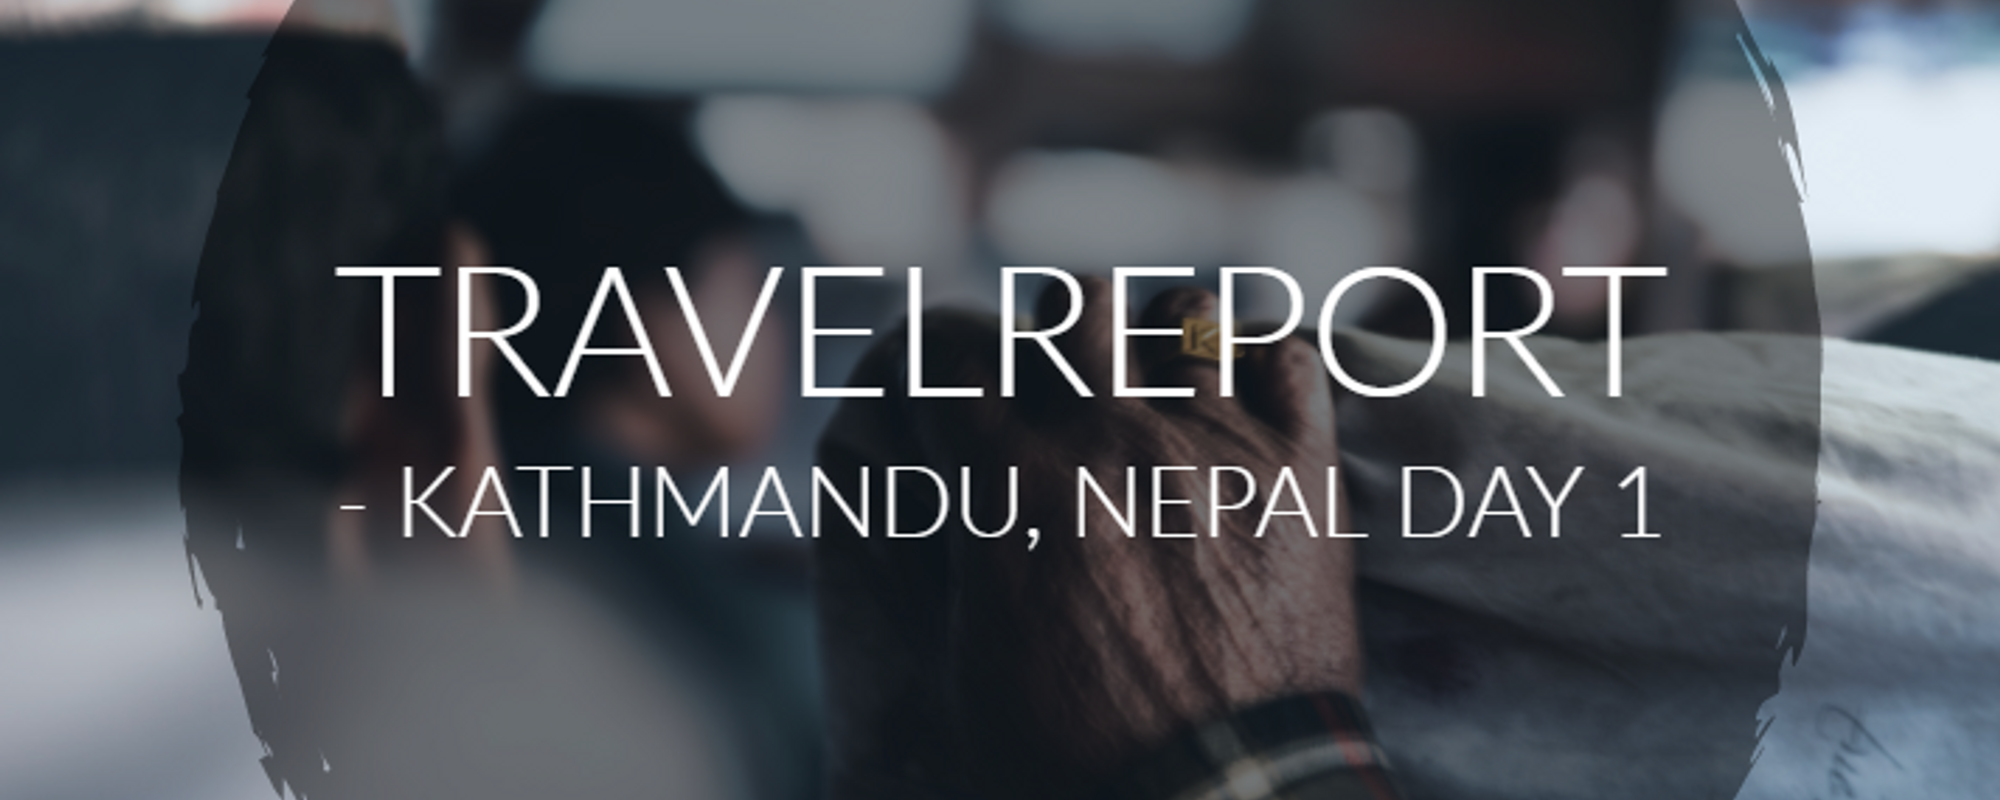 Kathmandu/Nagarkot, Nepal - Travelreport Day 1